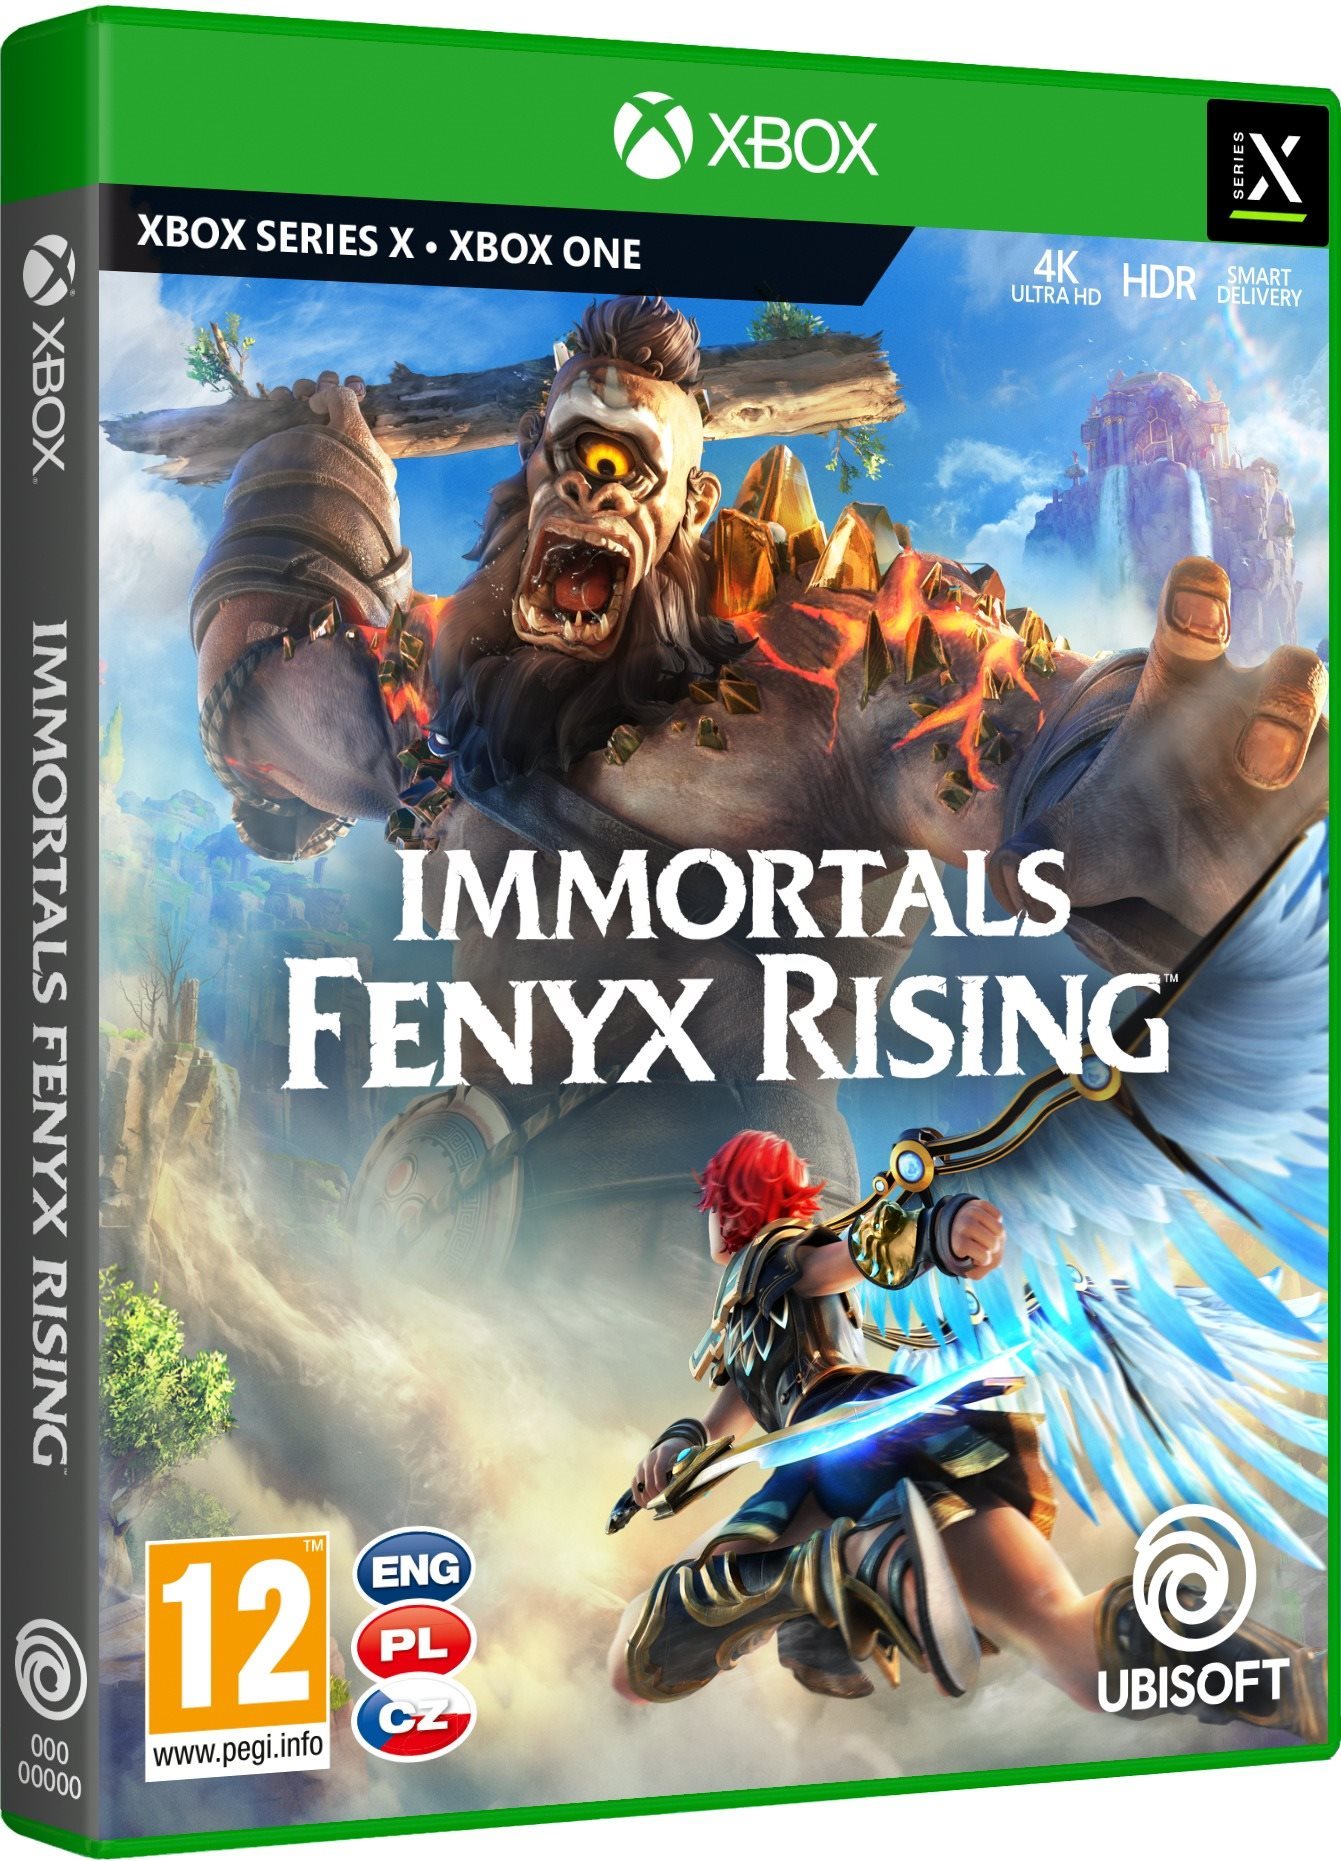 Immortals: Fenyx Rising - Xbox